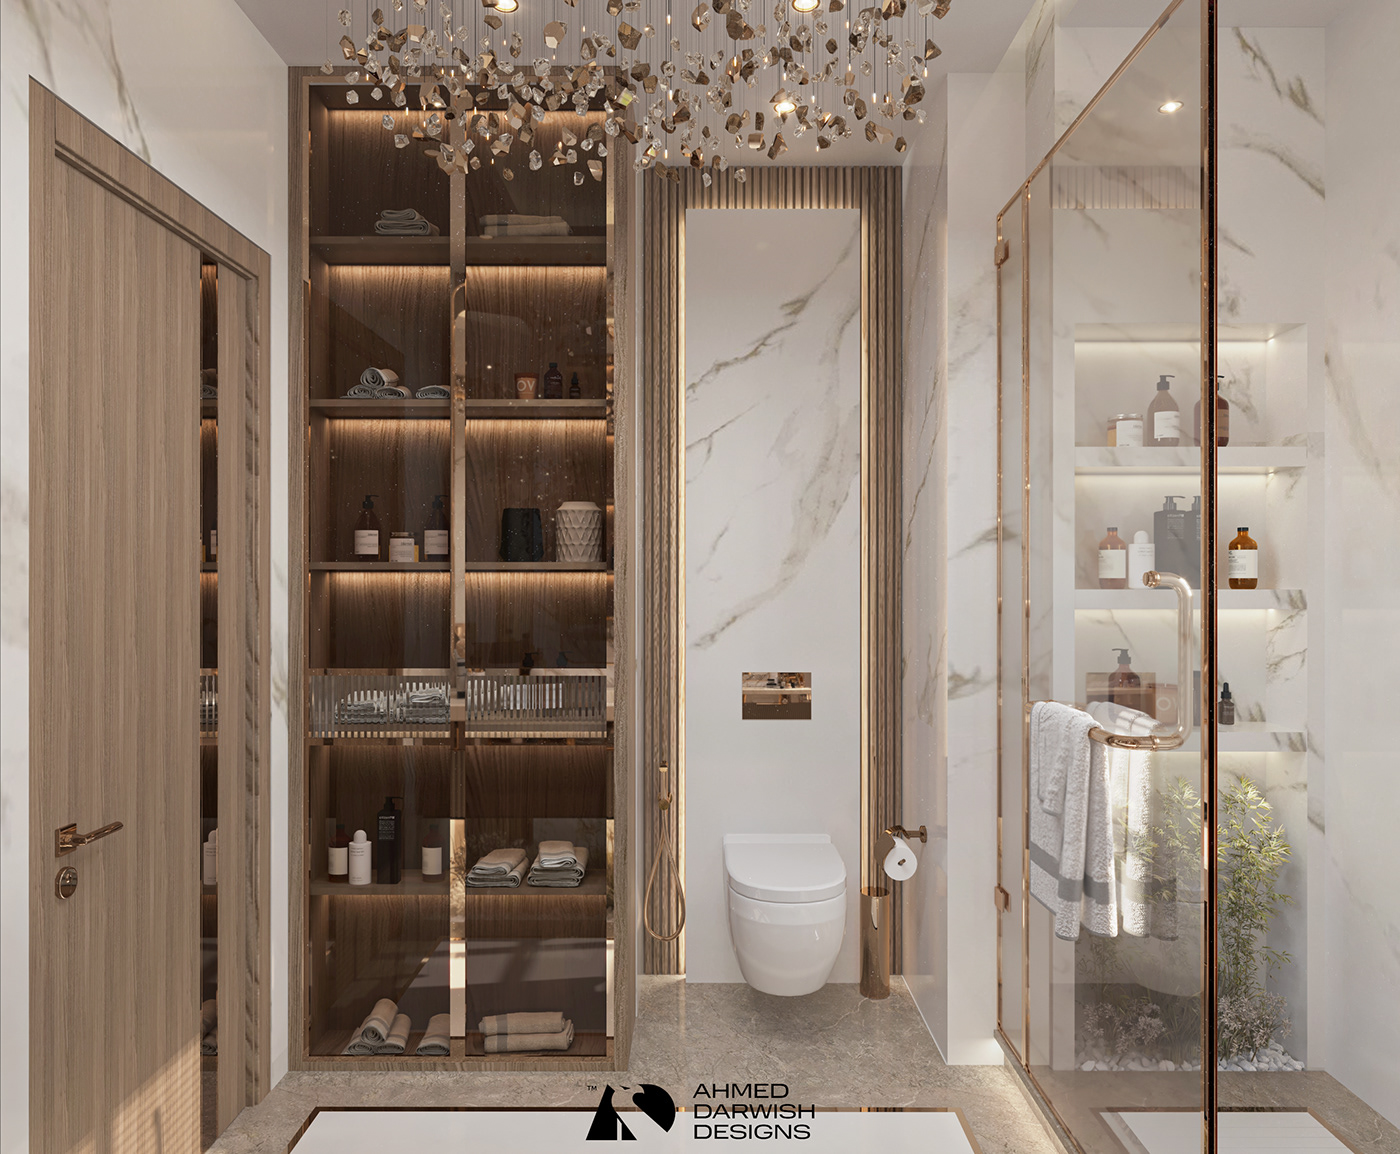 bathroom toilet modern Marble architecture interior design  SHOWER washbasin mirror chandelier design Interior